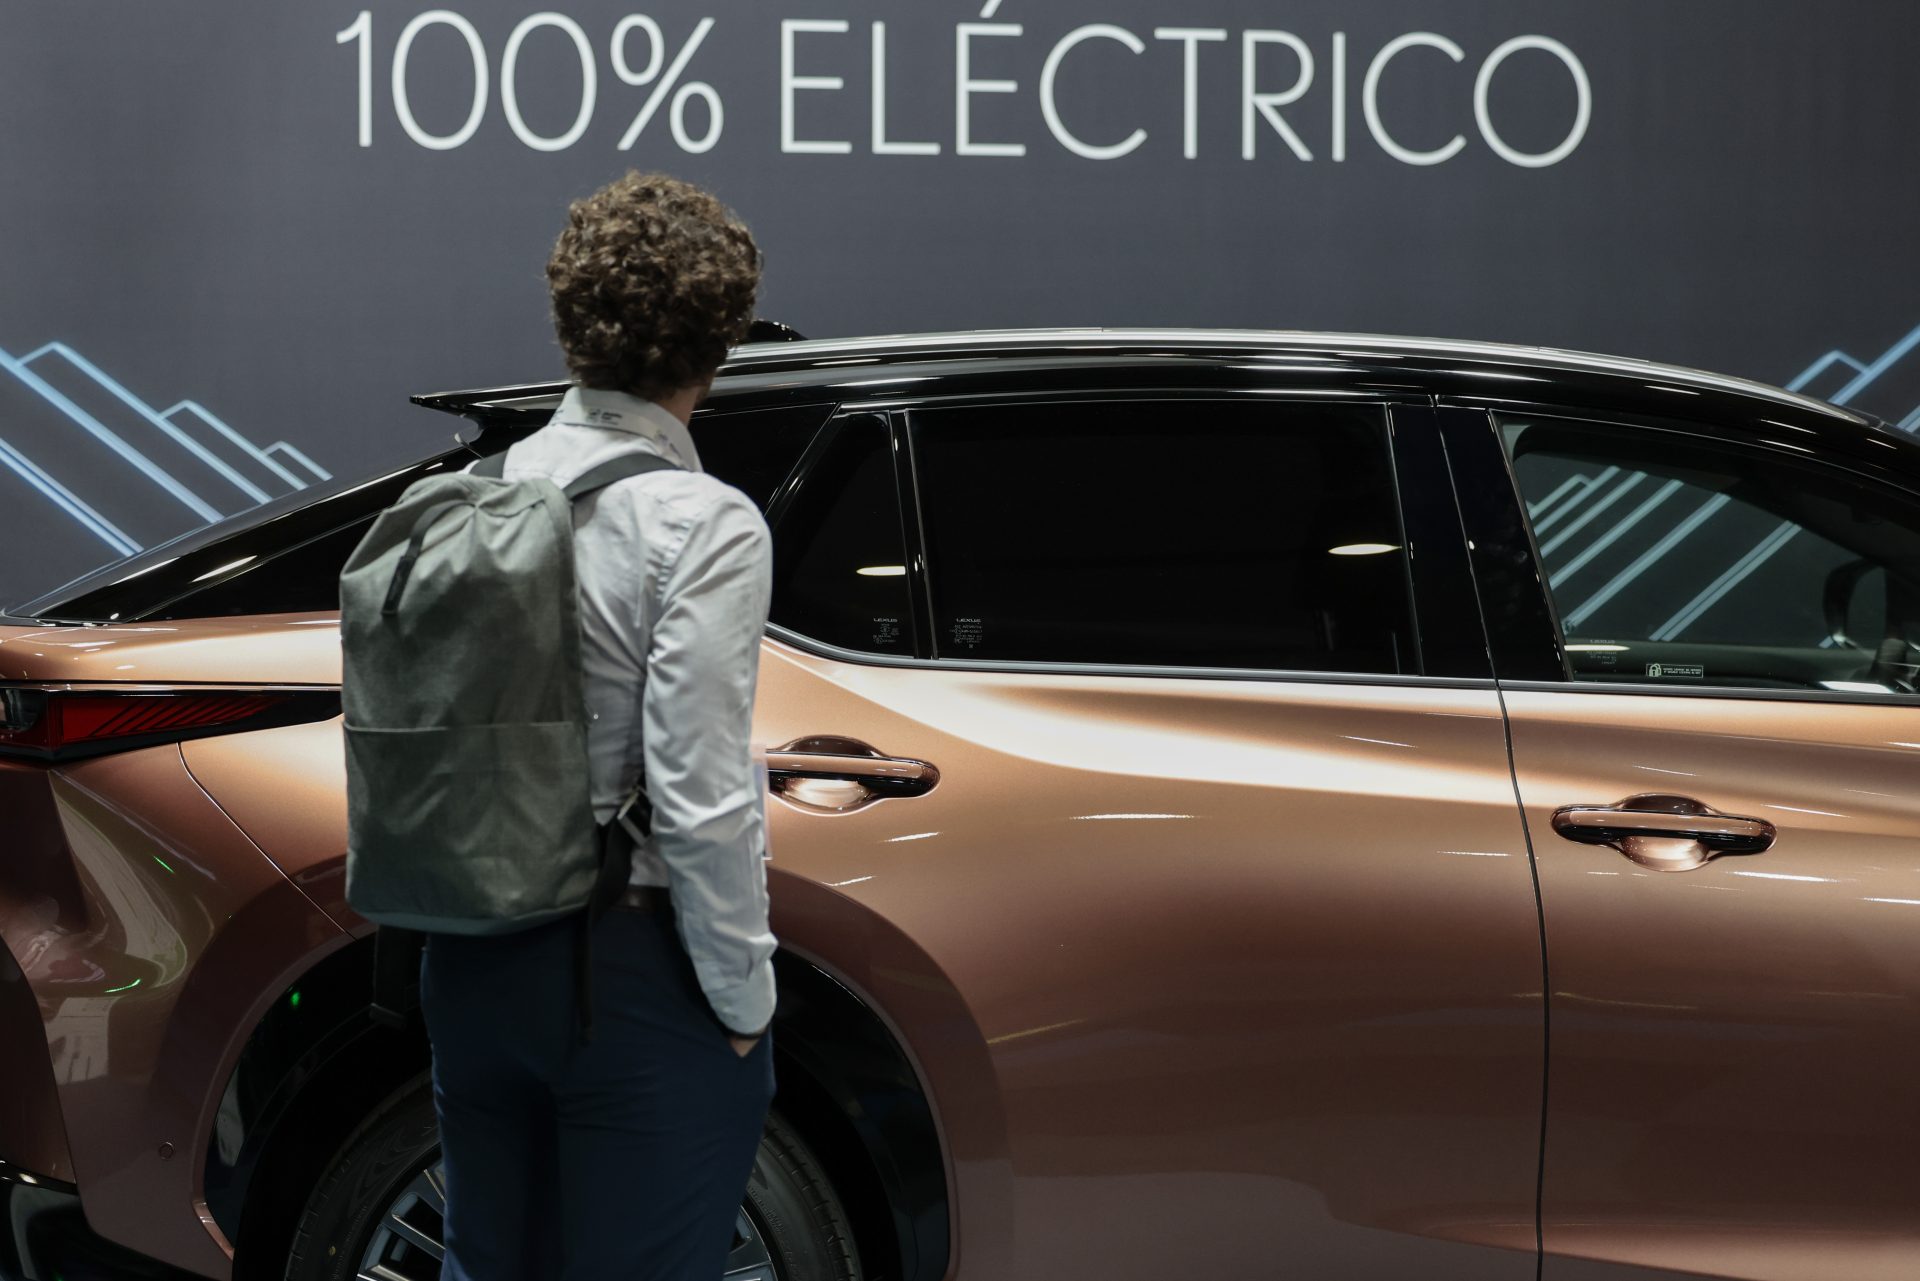 Una persona contempla un coche eléctrico en el eMobility Expo World Congress.